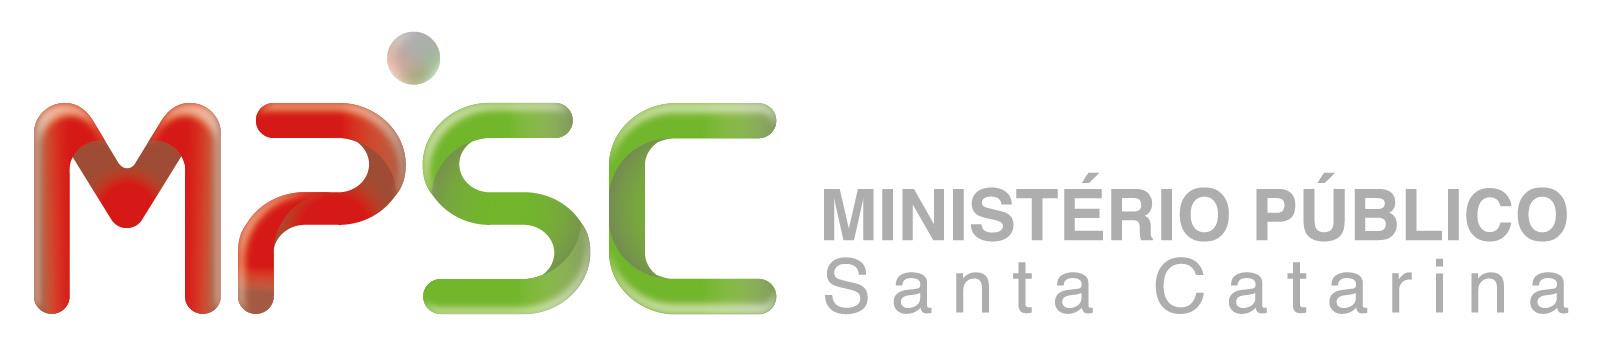 ESMP e MPSP promovem webinar sobre o Sistema Eletrônico de Informações - SEI!  - MPSP - Escola - Ministério Público do Estado de São Paulo